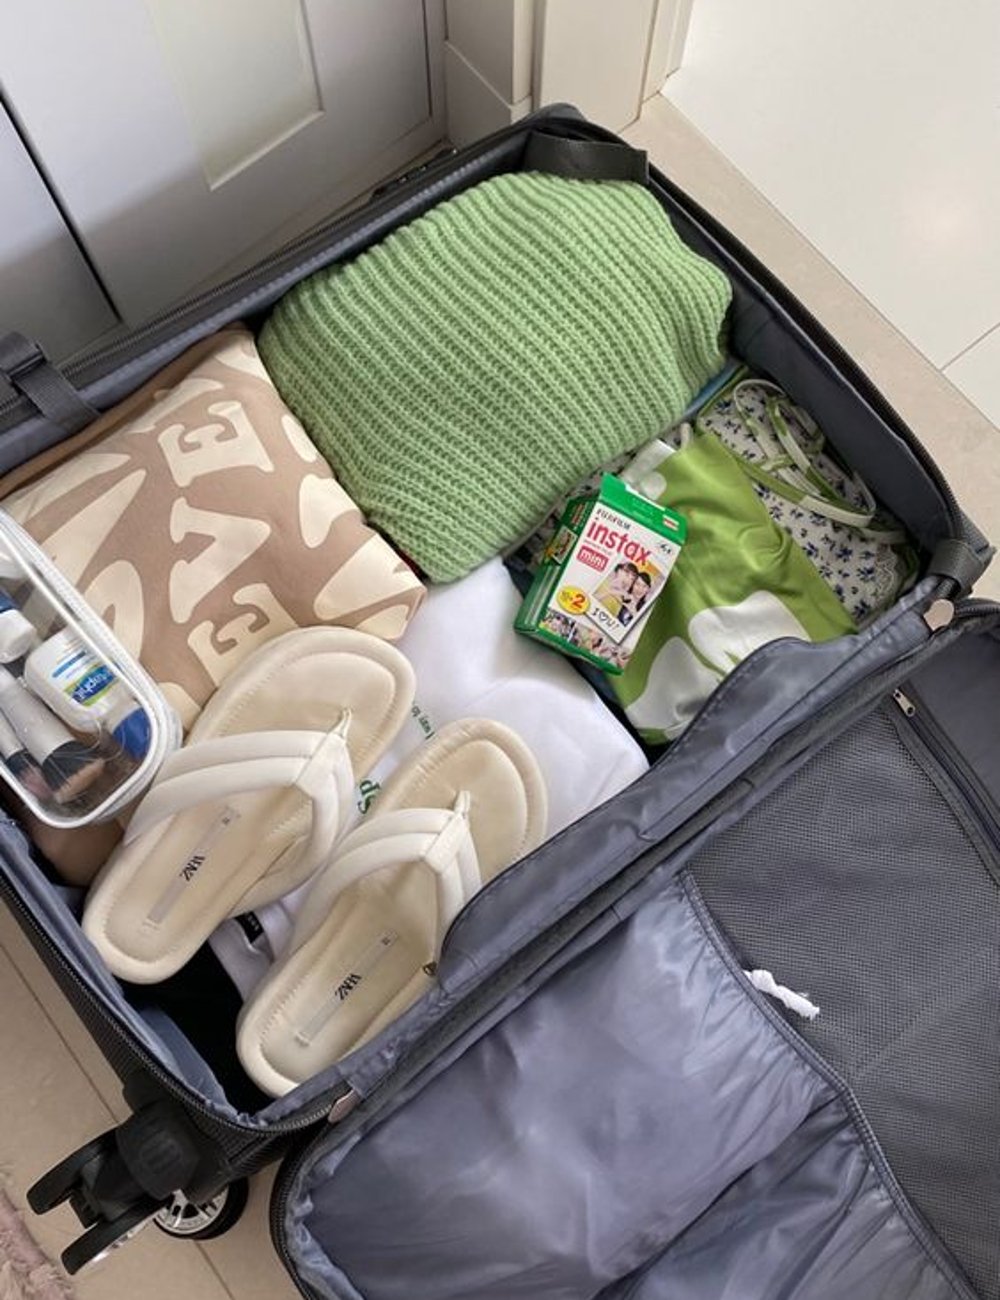 Chinelo  - mala de viagem - produtos de viagem  - viagem - dicas - https://stealthelook.com.br